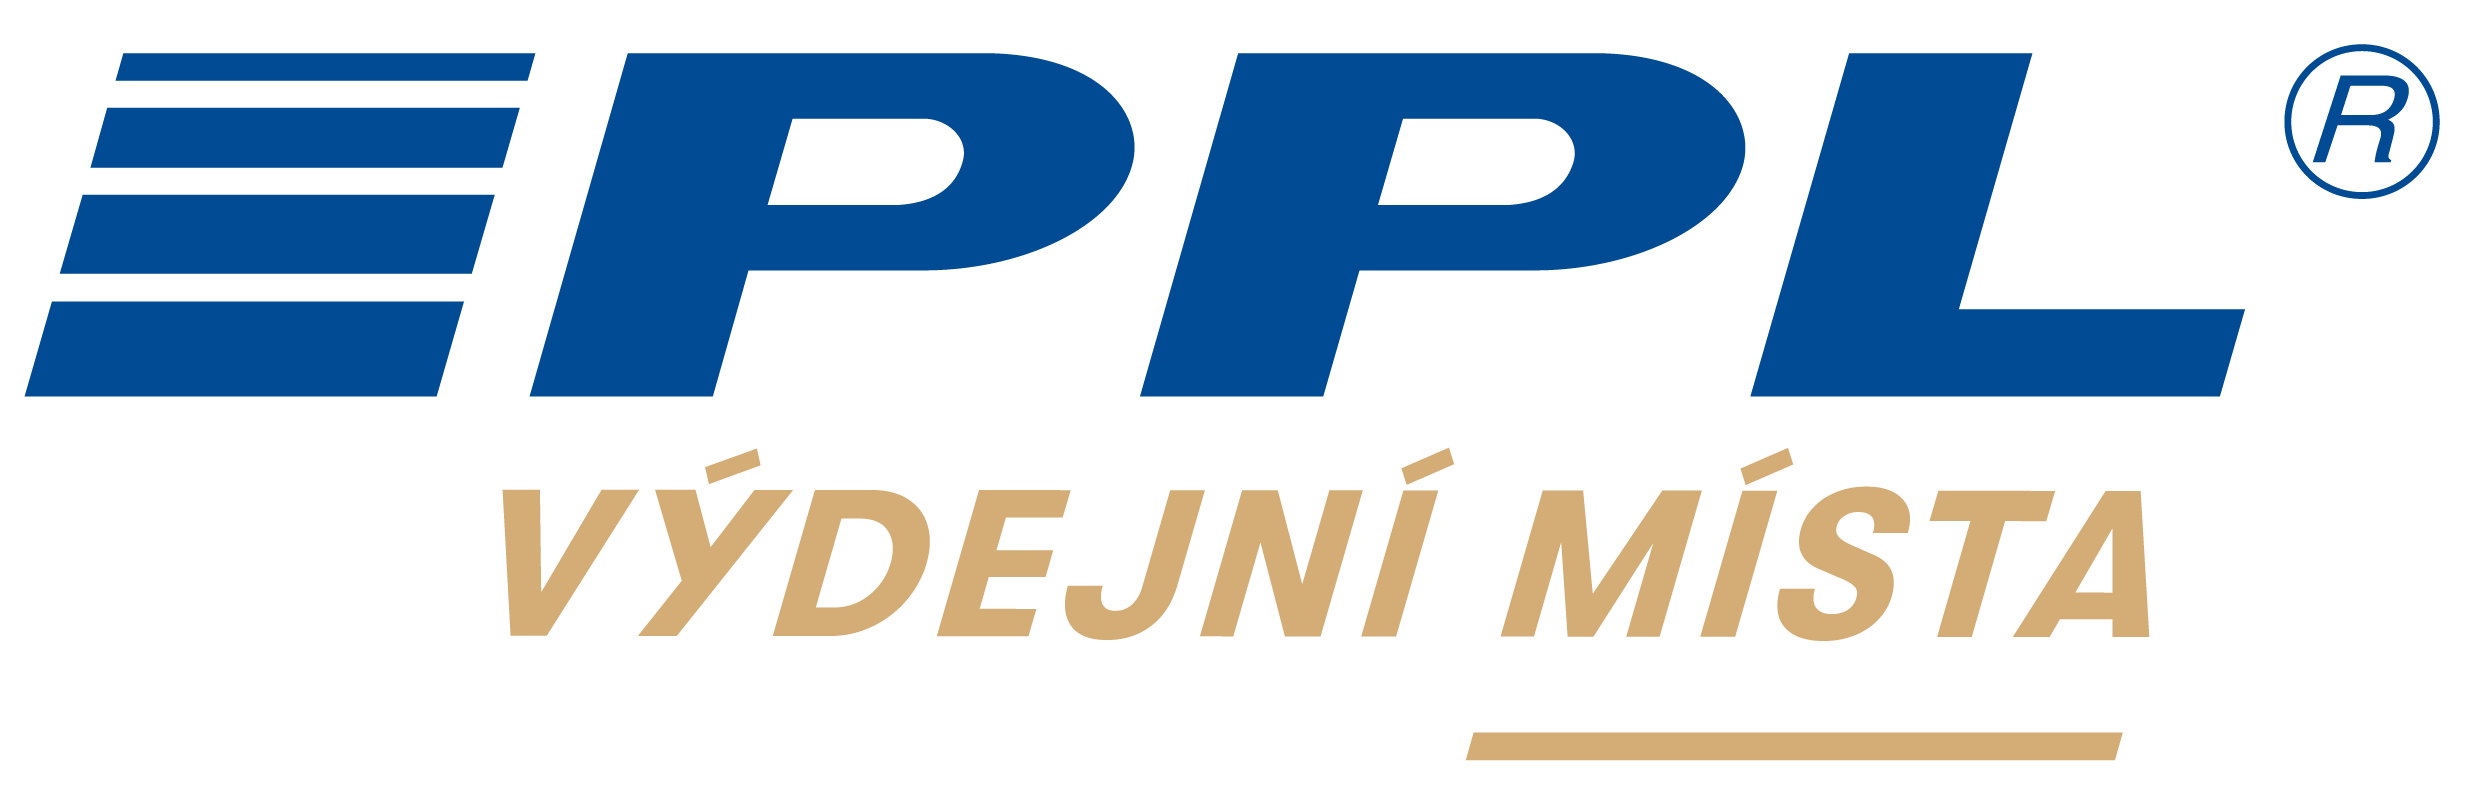 Logo-PS-PB-VM_VM-bily-bg_1